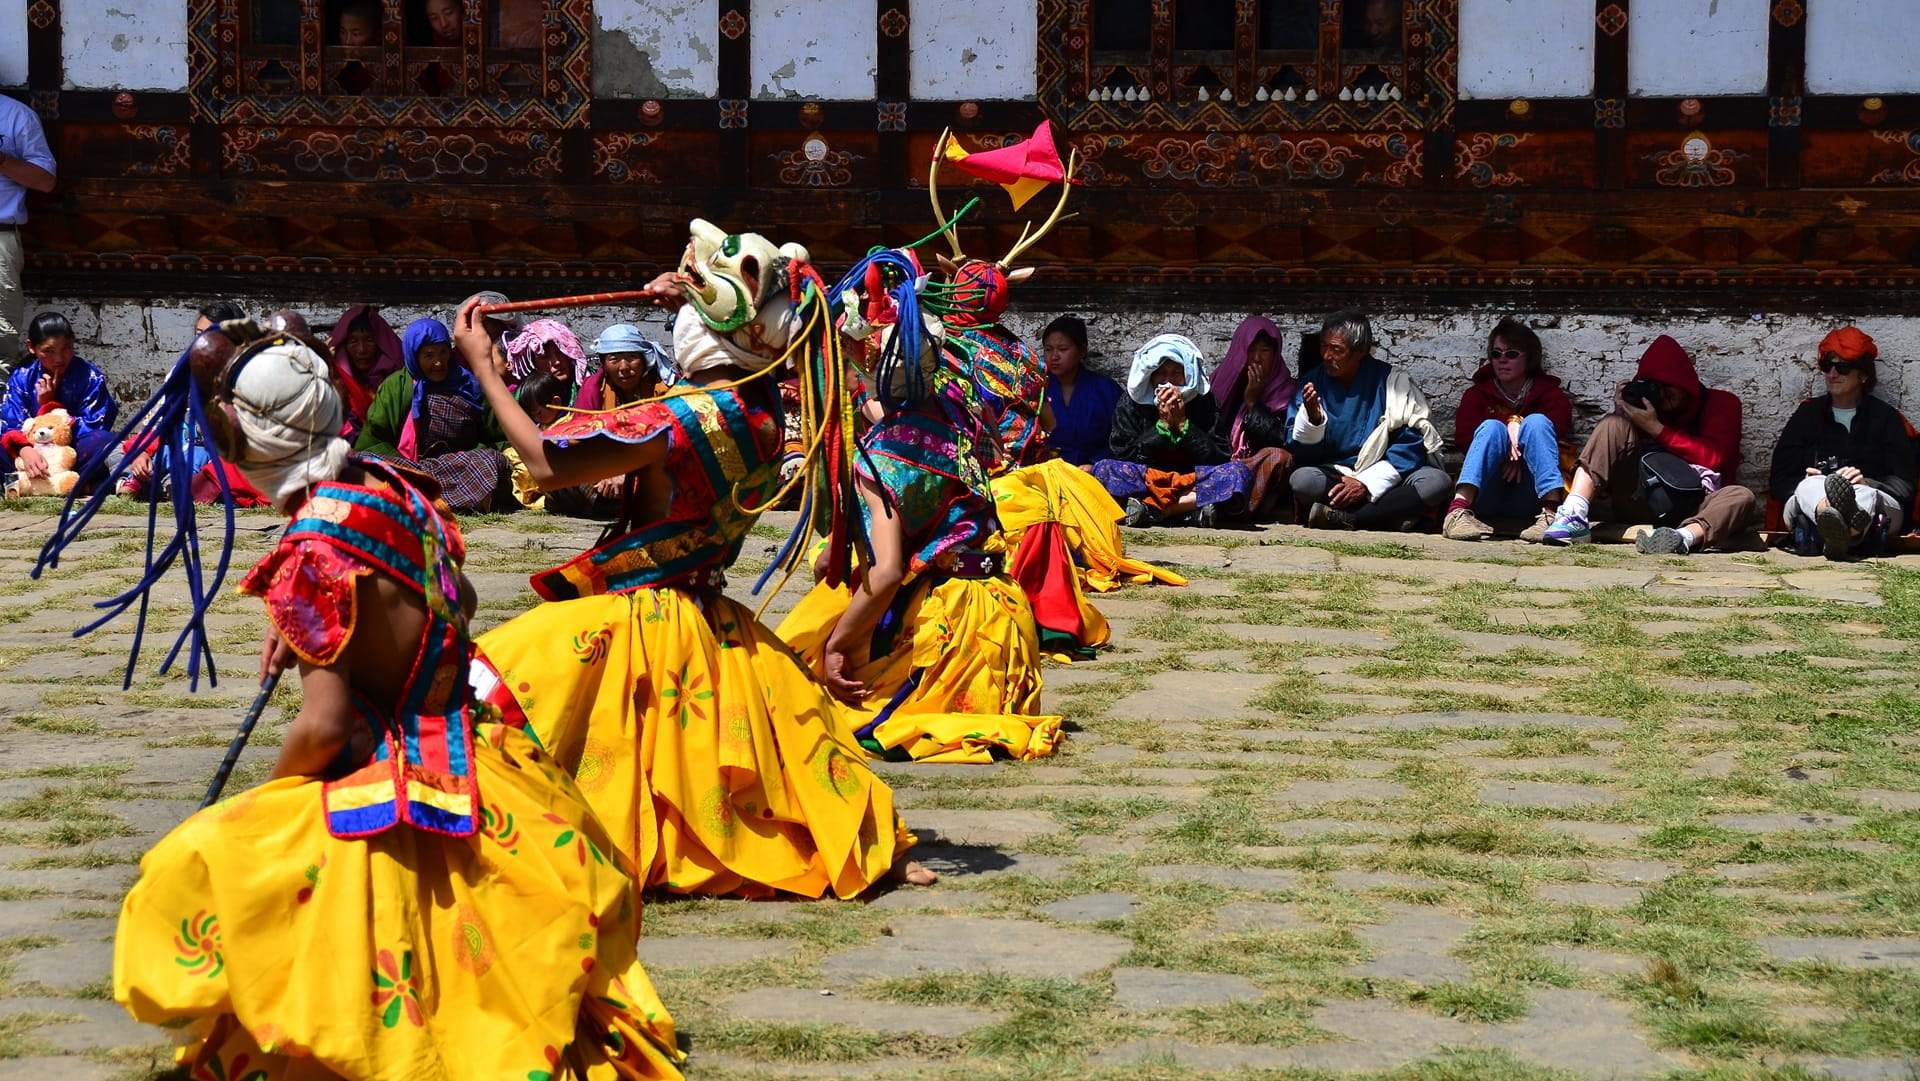 Klosterfest in Bhutan